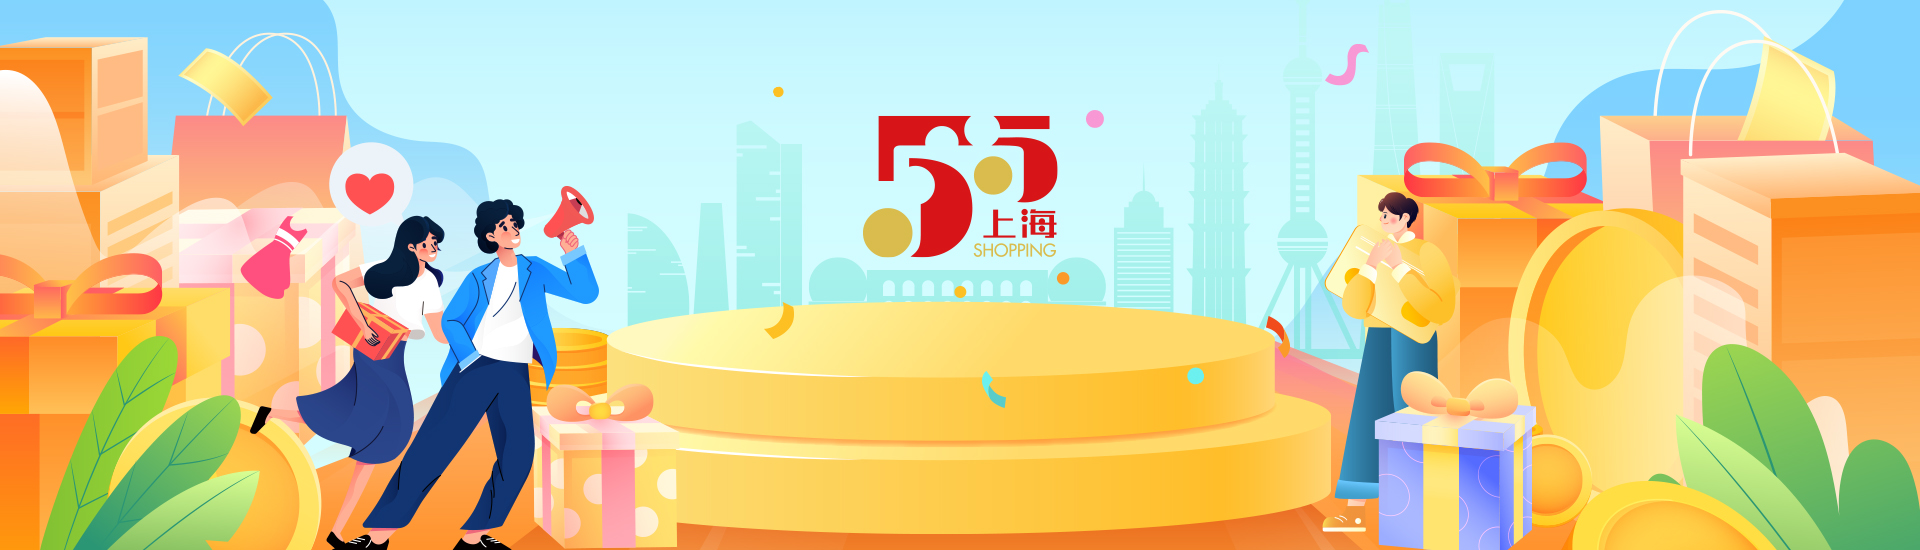 상하이 '5·5 쇼핑축제' 개막, 다양한 이벤트 펼쳐져